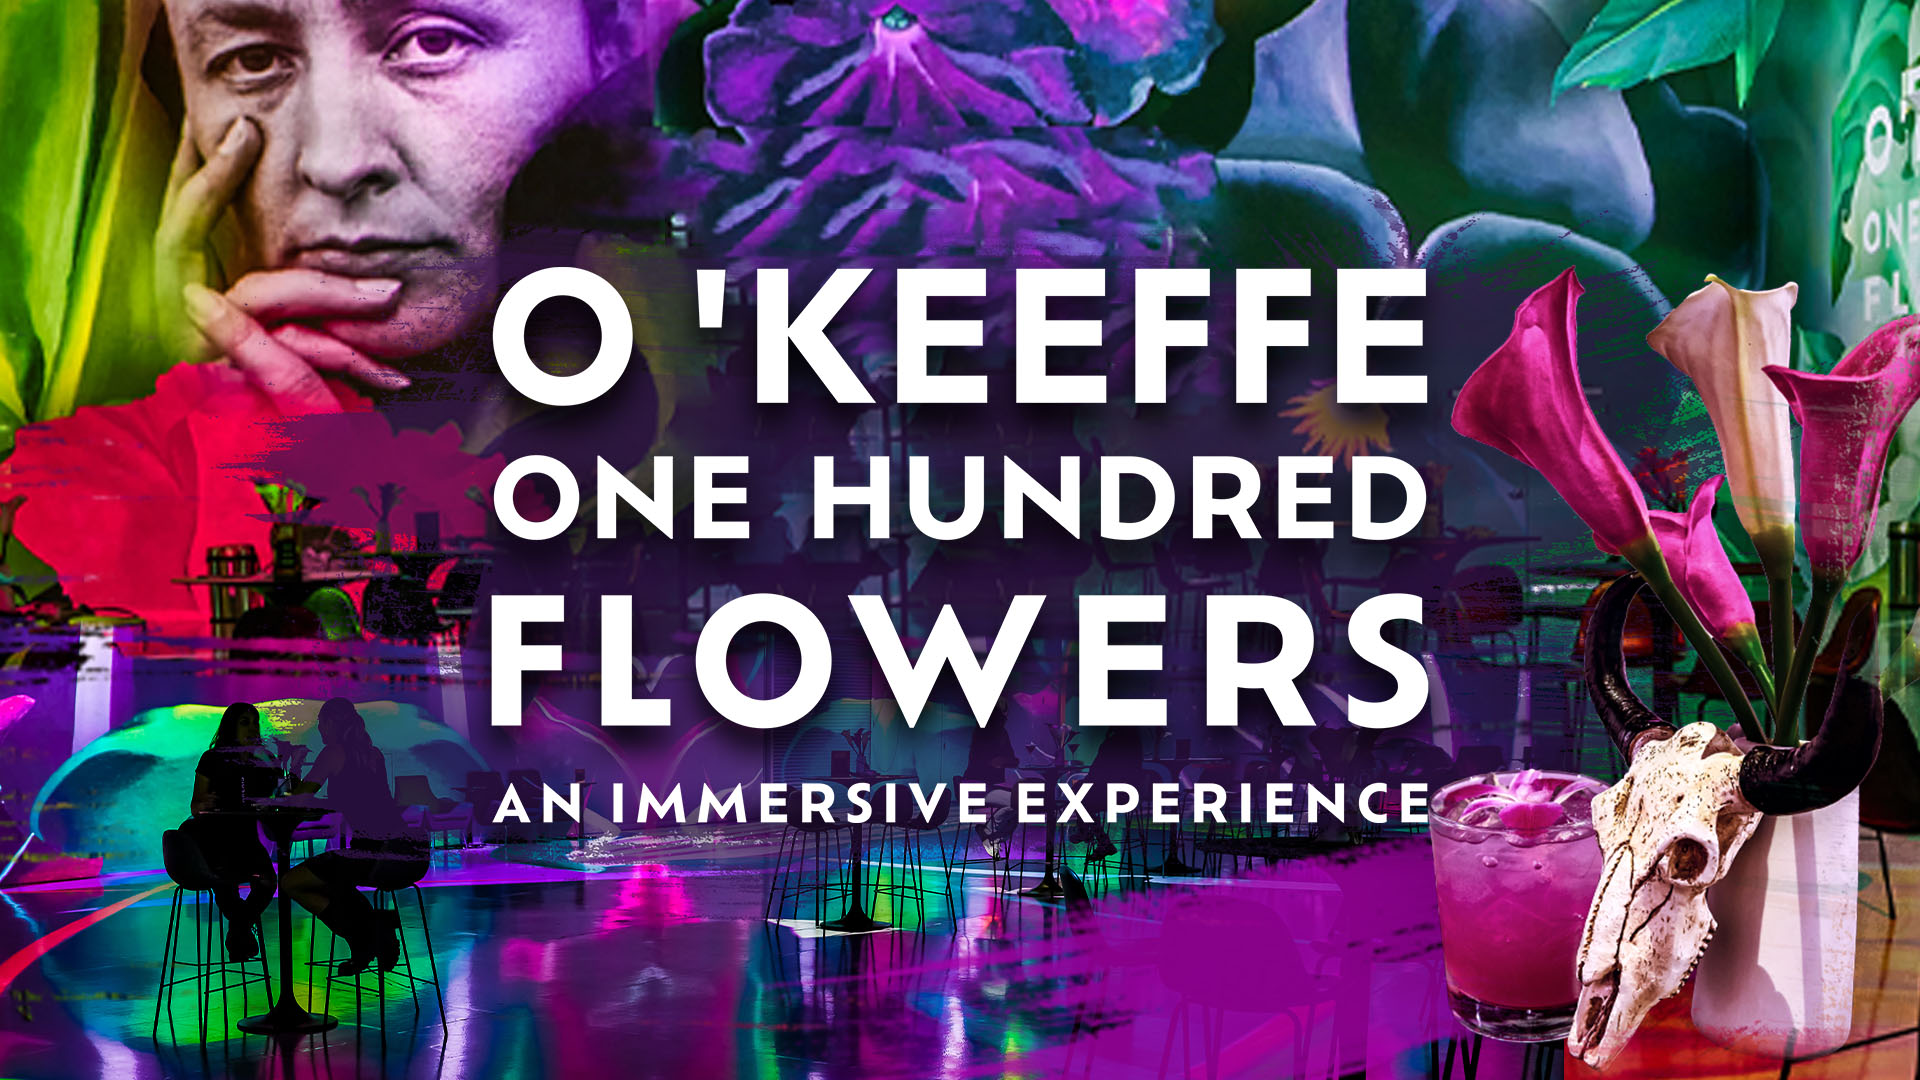 O'Keeffe One Hundred Flowers